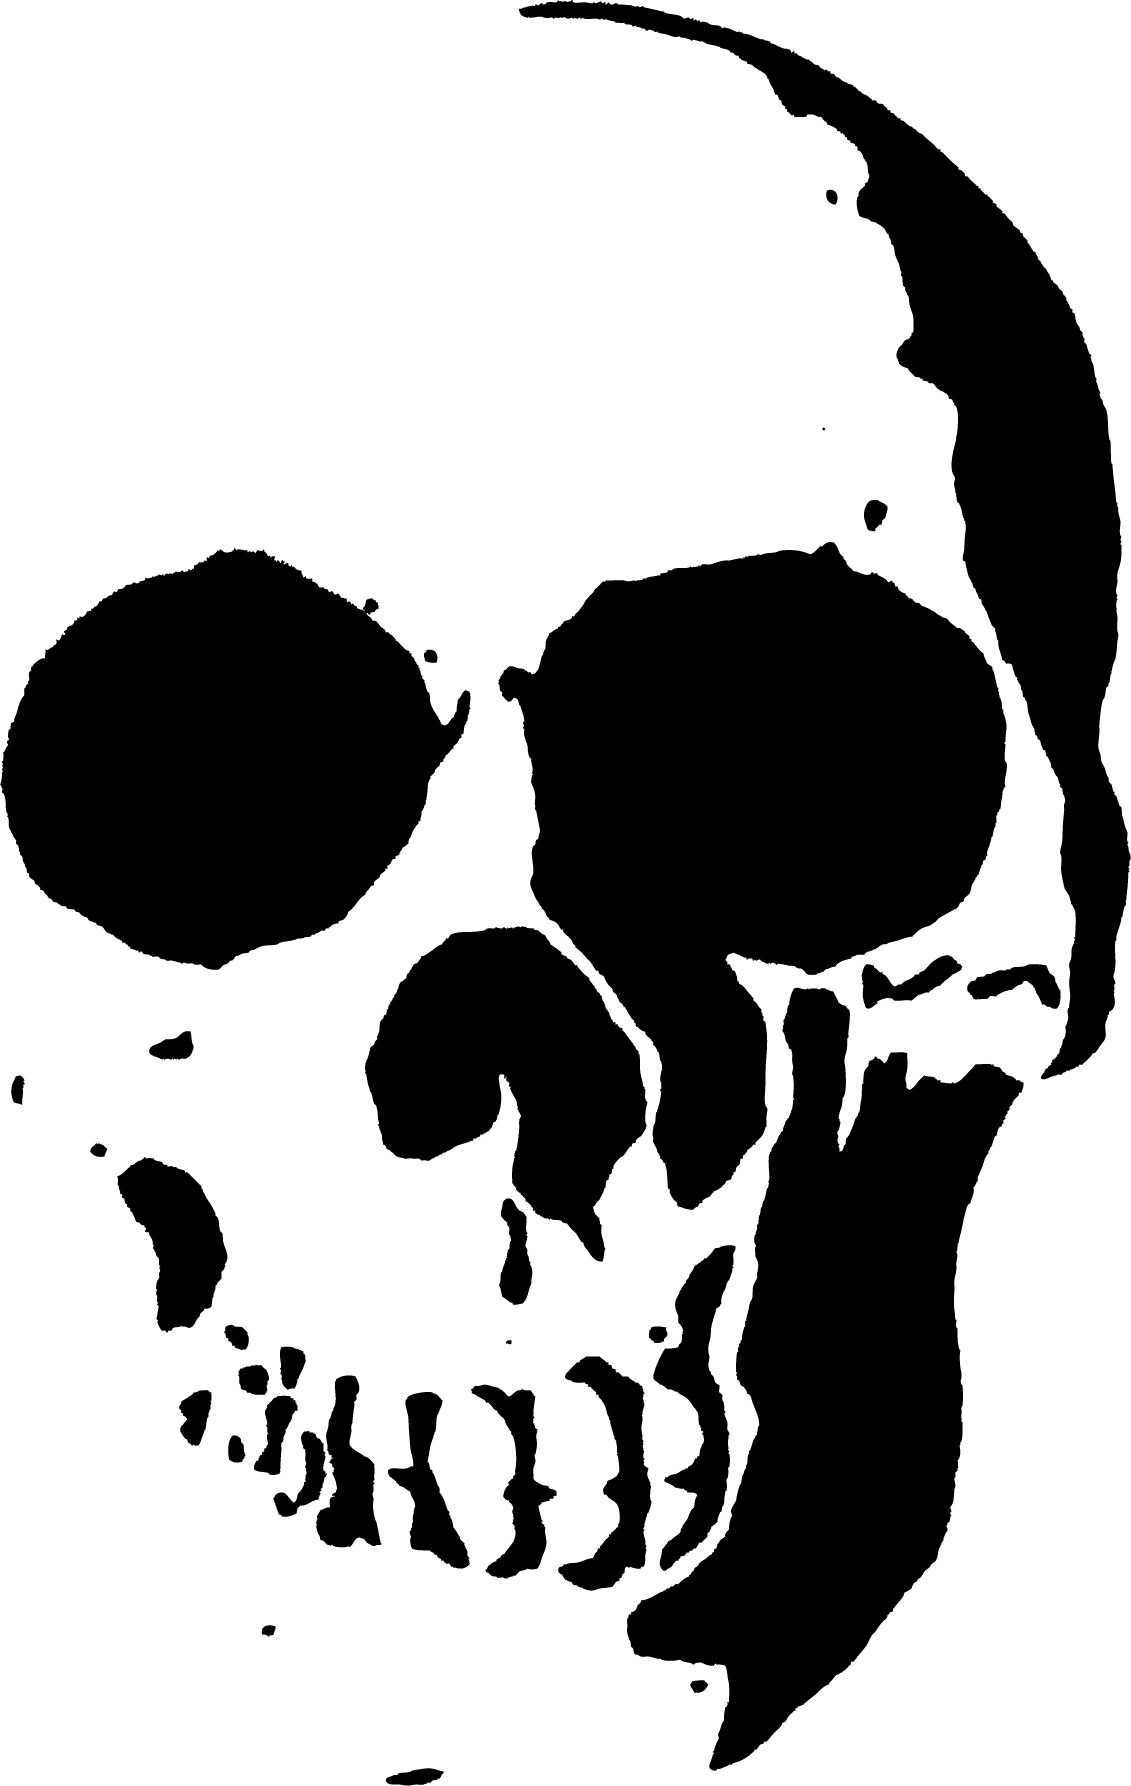 Skull Stencil Template Schadel Schablone Zeichenschablonen Stencil Vorlagen